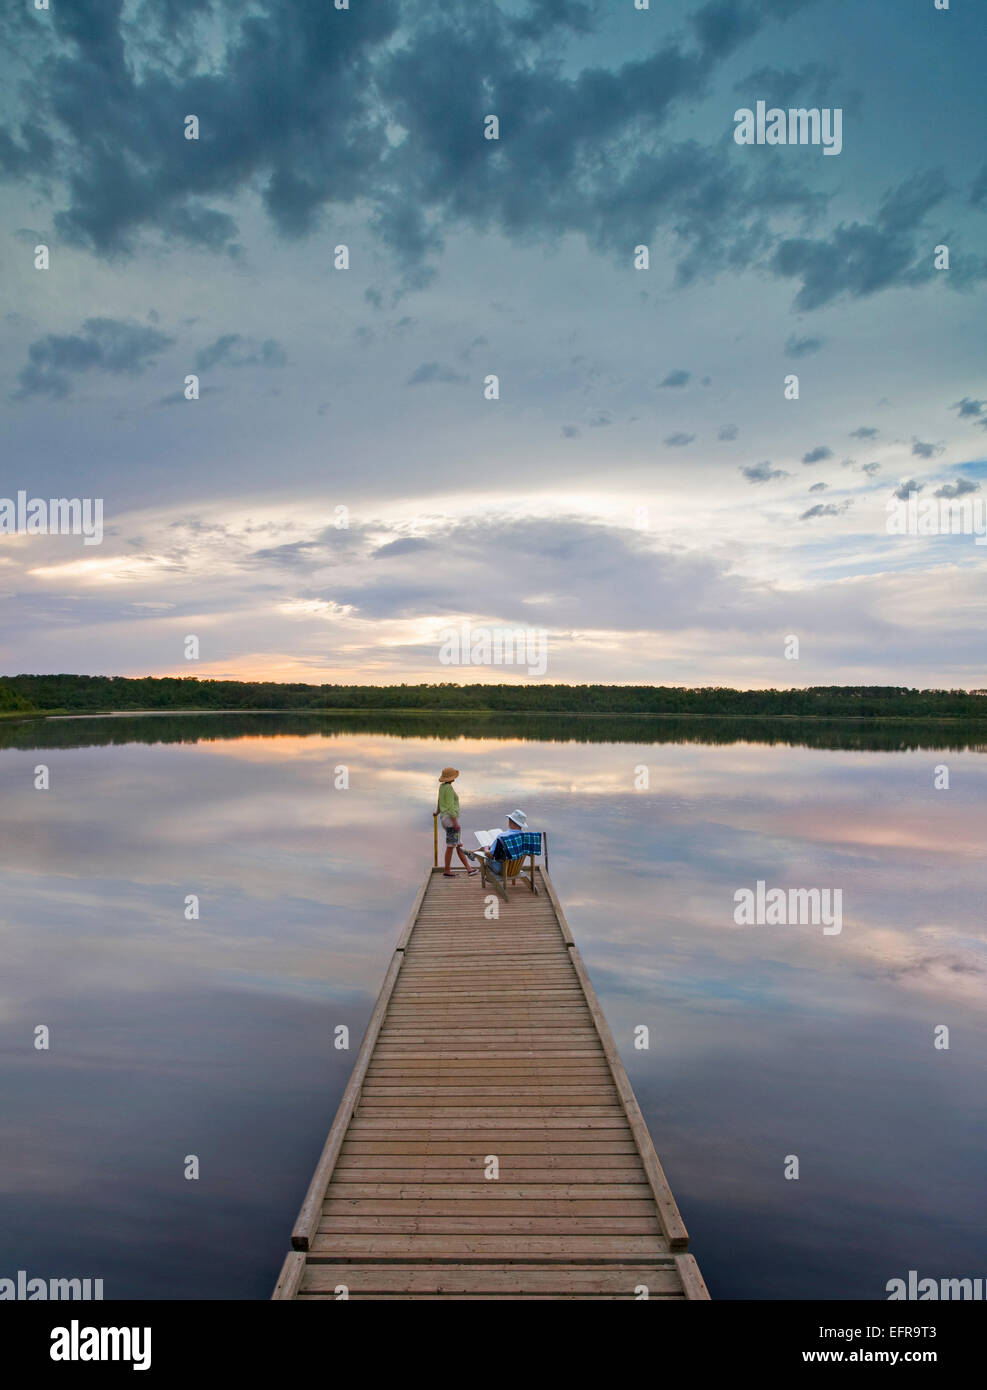 Una pareja, hombre y mujer sentada al final de un largo muelle de madera llegando a un lago tranquilo, al atardecer. Foto de stock